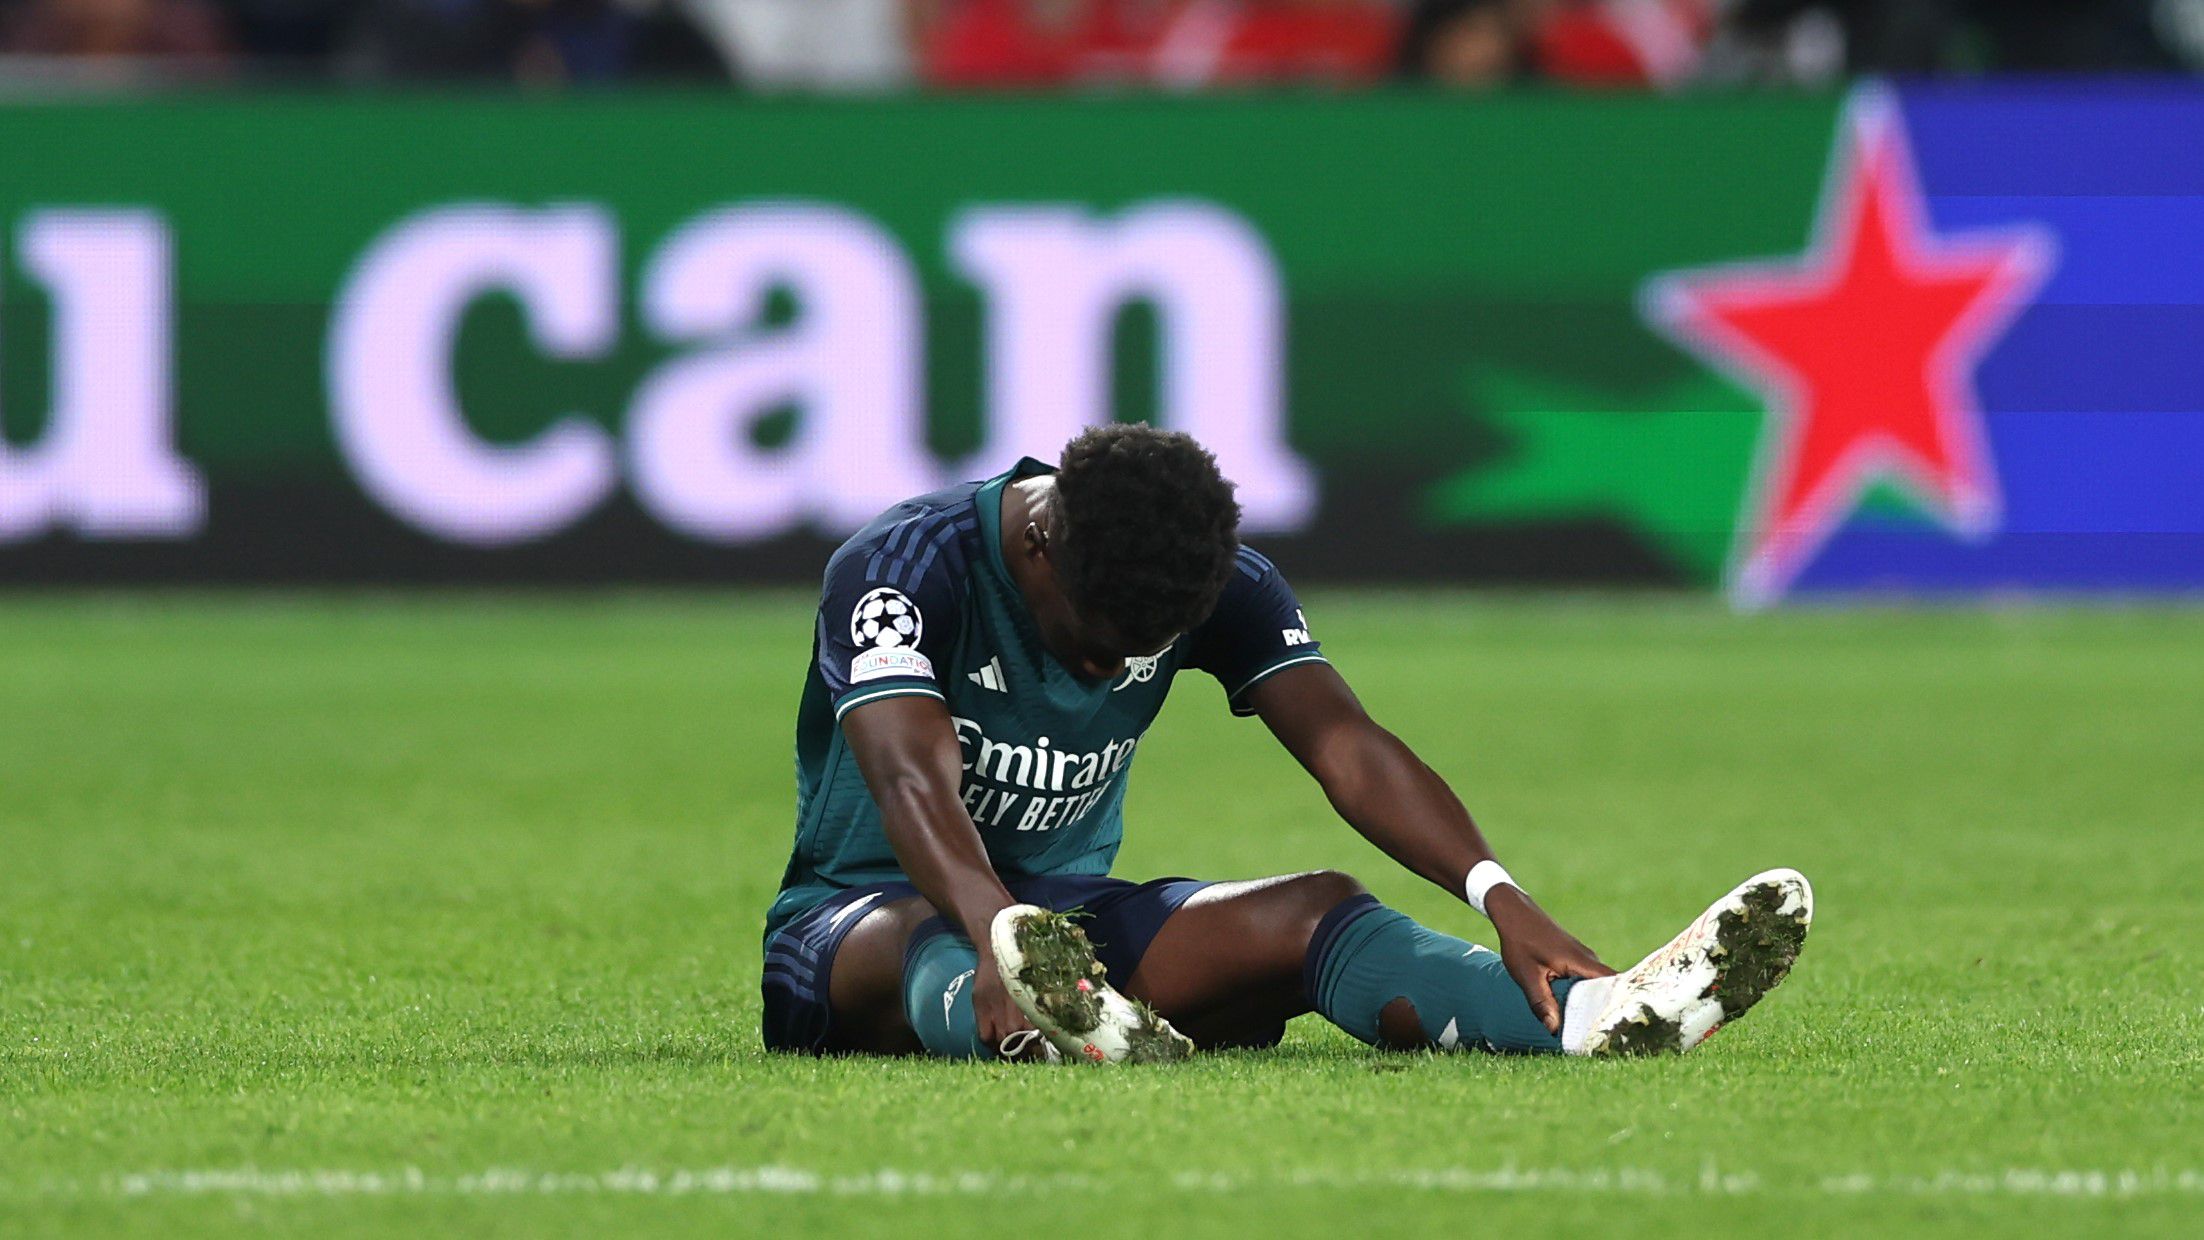 Fájdalmas pillanat az Arsenal számára: Bukayo Saka sérülés miatt kért cserét a Lens ellen – hétvégén a Manchester City vár Mikel Arteta együttesére